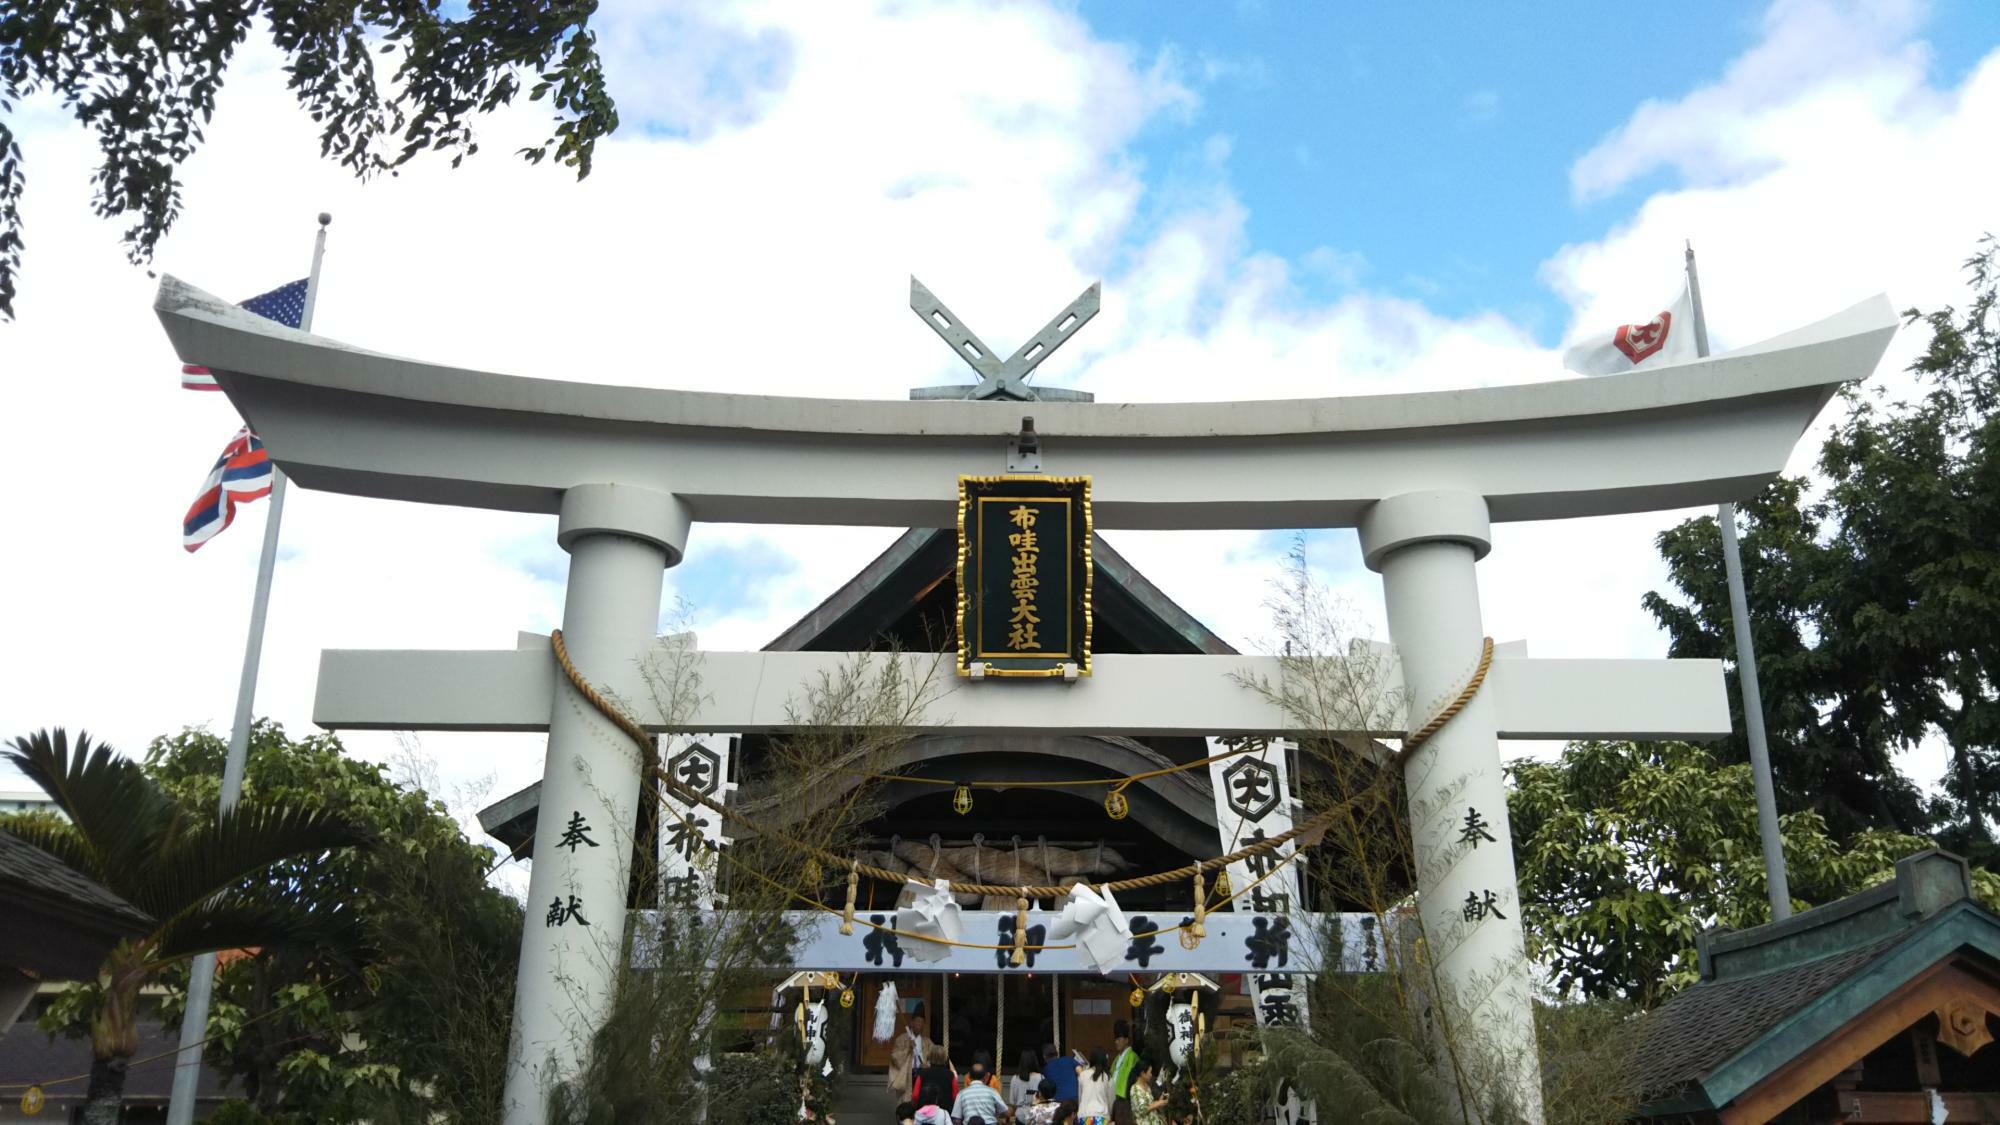 ハワイ州オアフ島内ホノルル、ダウンタウンルート近くにあるハワイ出雲大社では、年始になると毎年沢山の参拝客が訪れる。一見日本の神社そのものであるが、国旗や州旗も飾られている(2018年筆者撮影)。